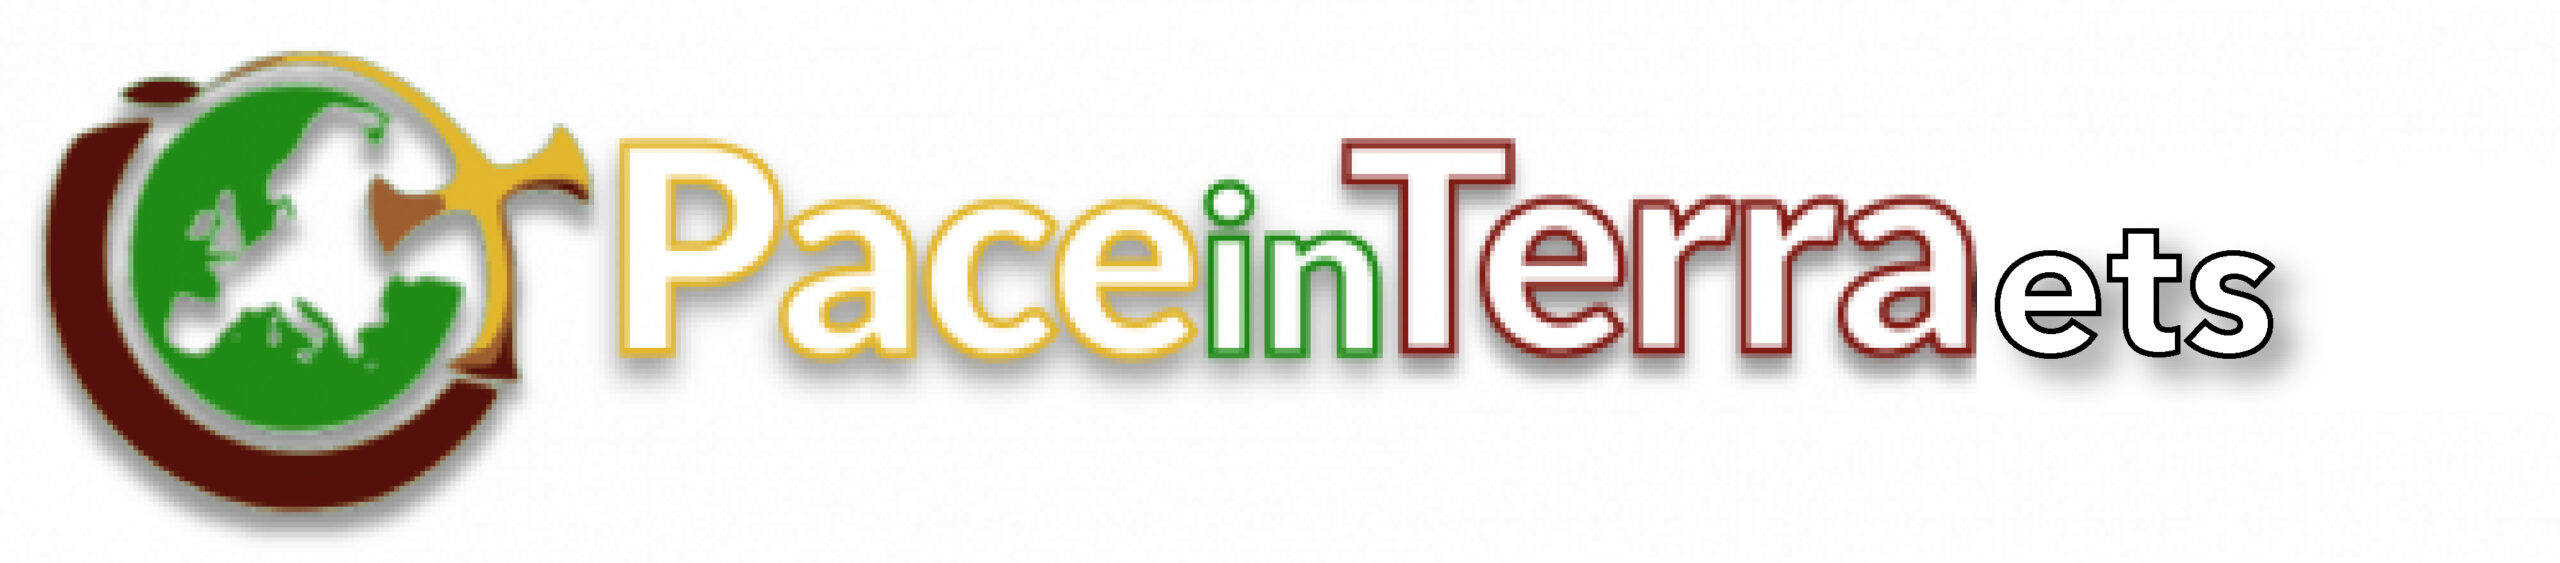 PaceInTerra_logo2_